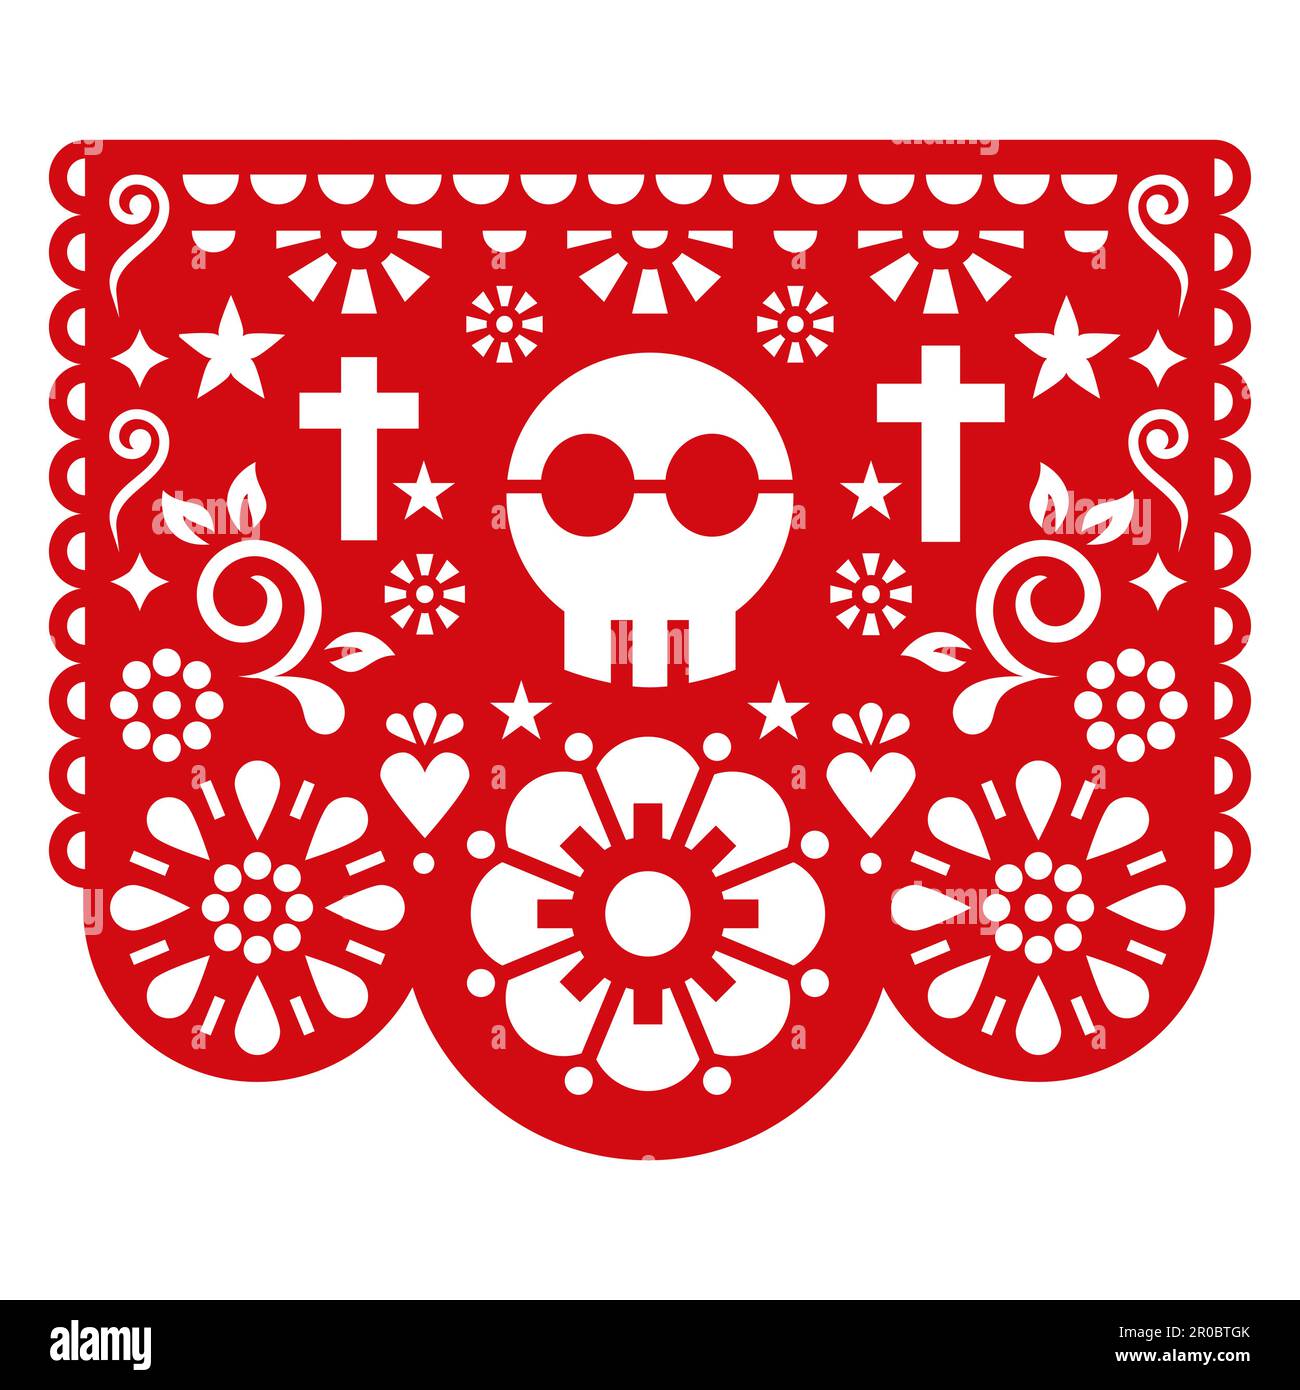 Halloween Papel Picado dessin vectoriel avec crâne, fleurs et croix, décoration de découpe de papier mexicain - guirlande de fête Illustration de Vecteur